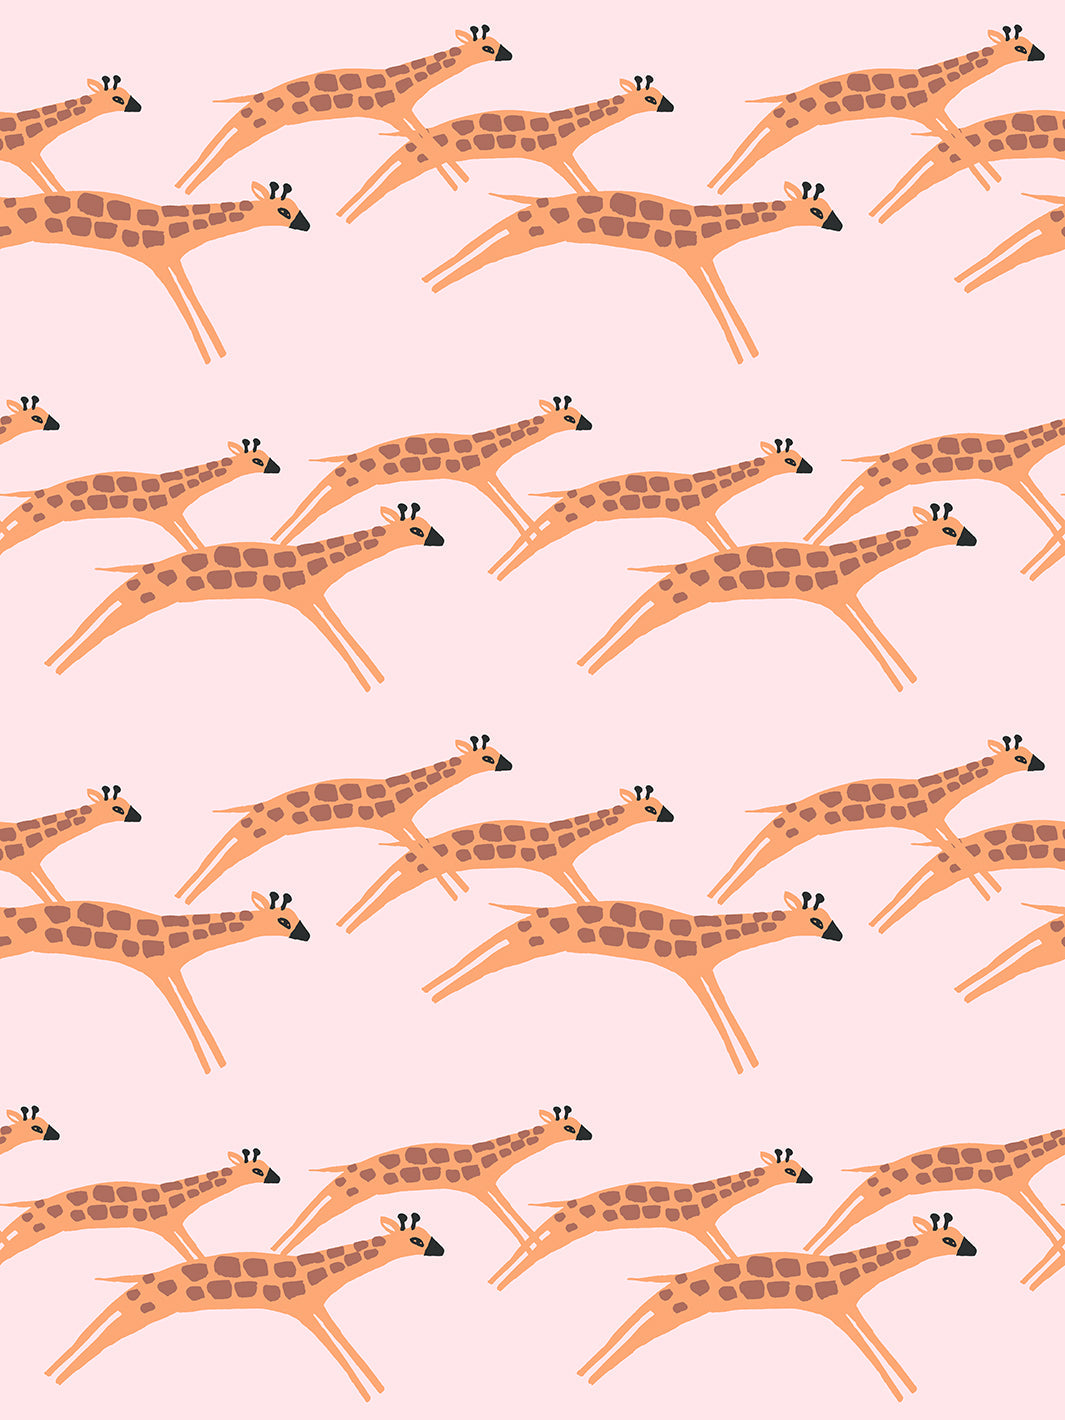 'Galloping Giraffes' Wallpaper by Tea Collection - Piggy Bank